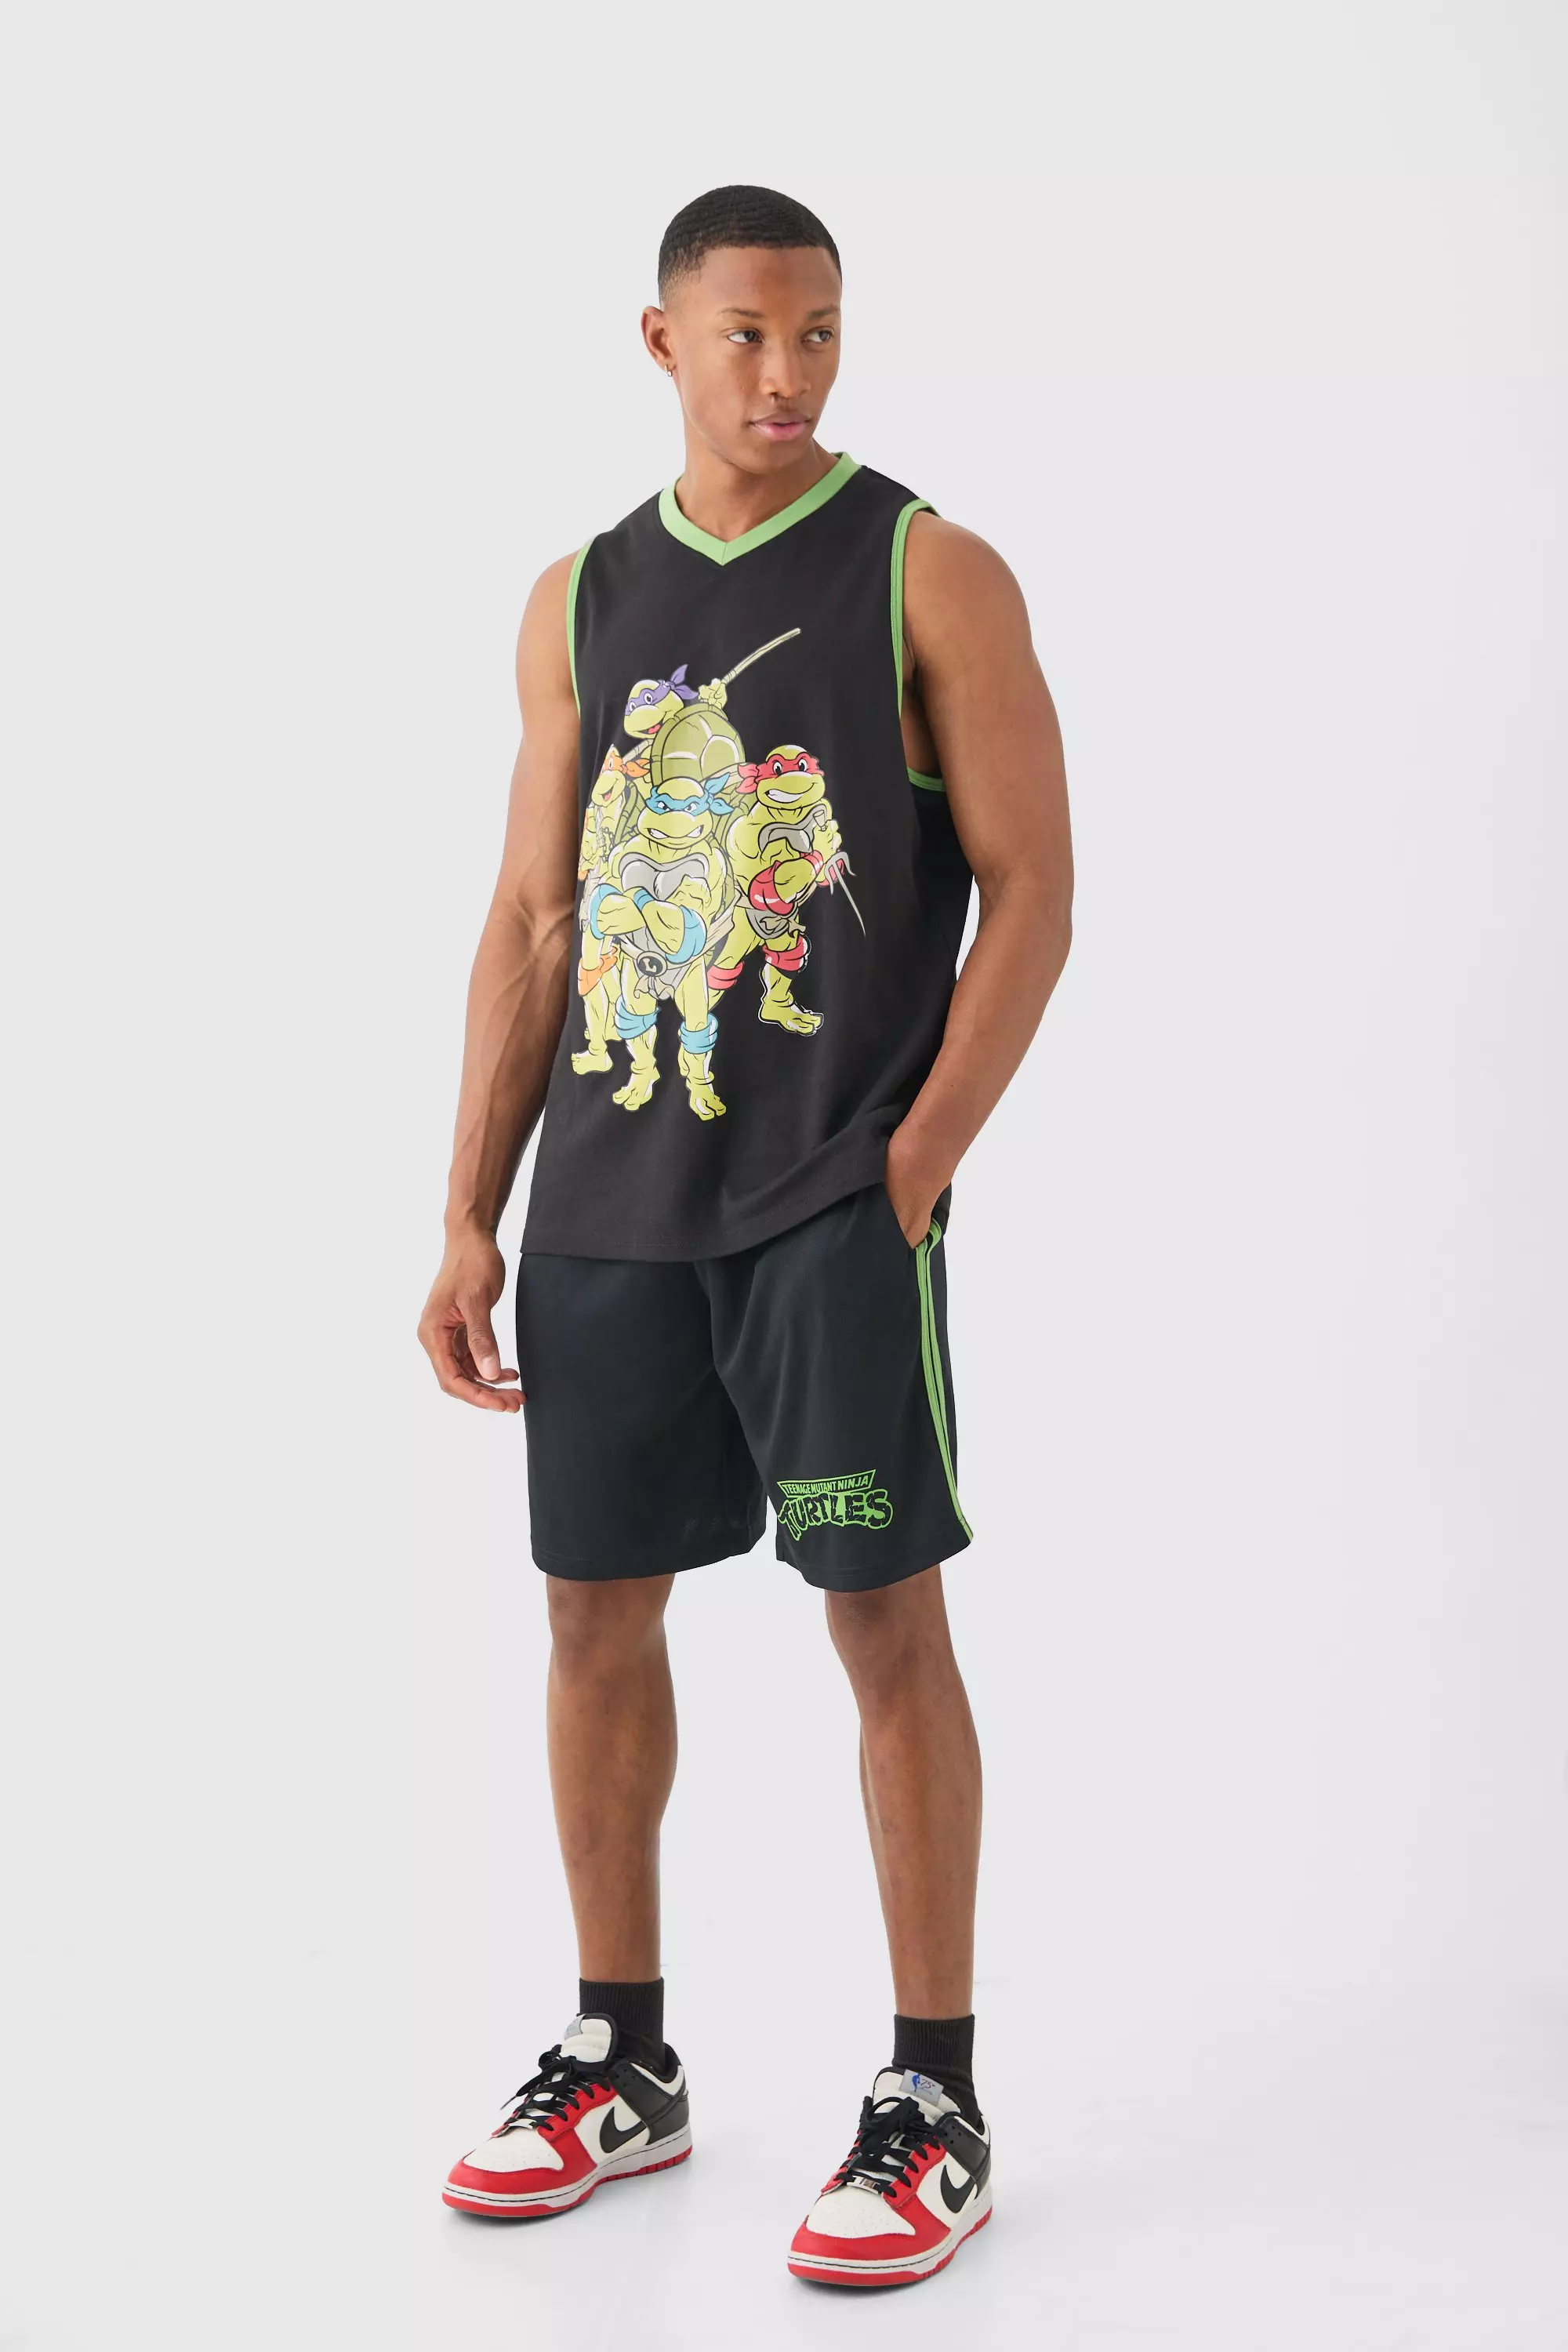 Black Oversized Ninja Turtles License Vest And Short Set